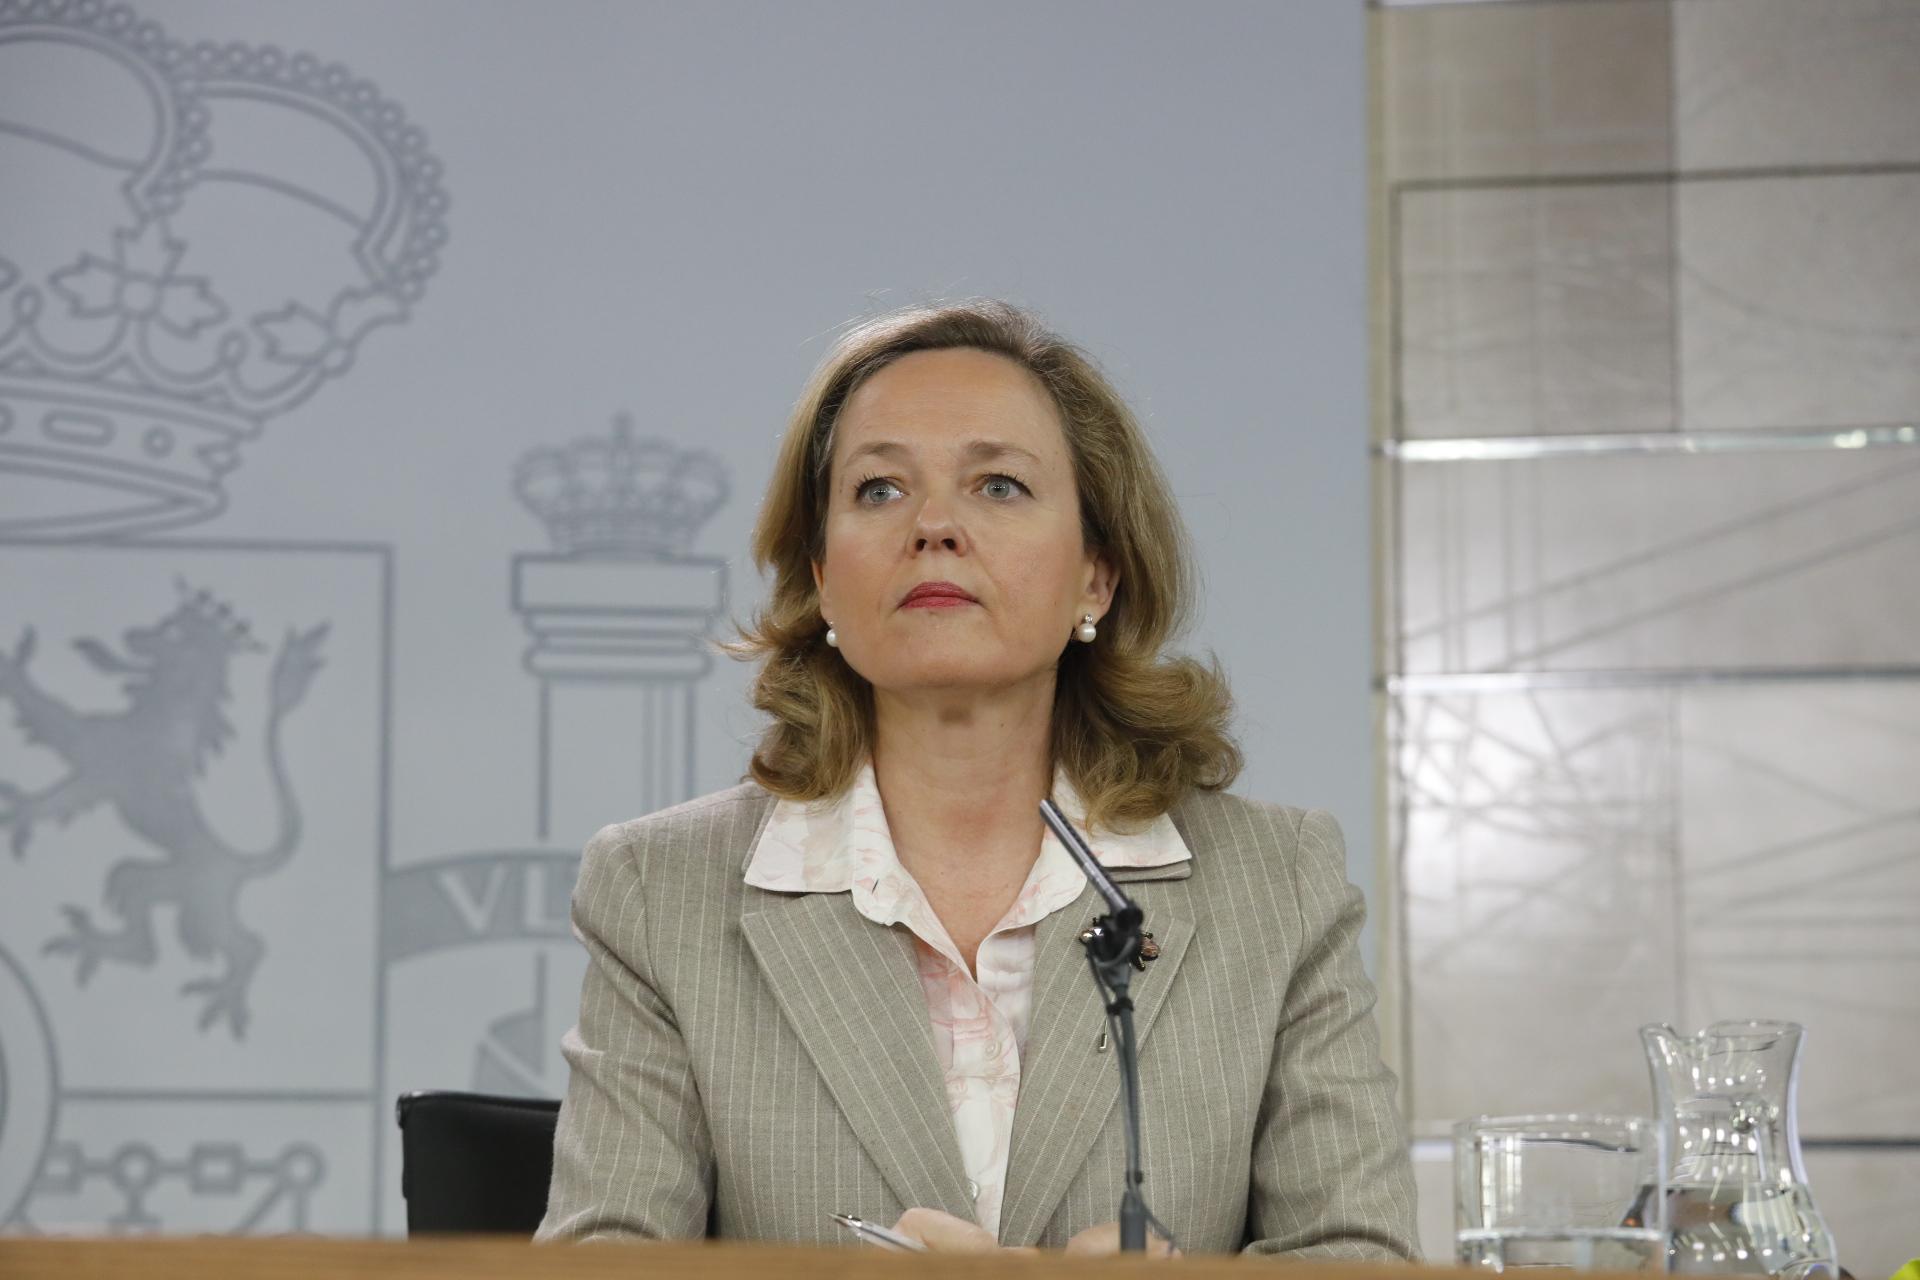 La ministra de Economía y Empresa Nadia Calviño tras la celebración del Consejo de Ministros - Marta Fernández Europa Press